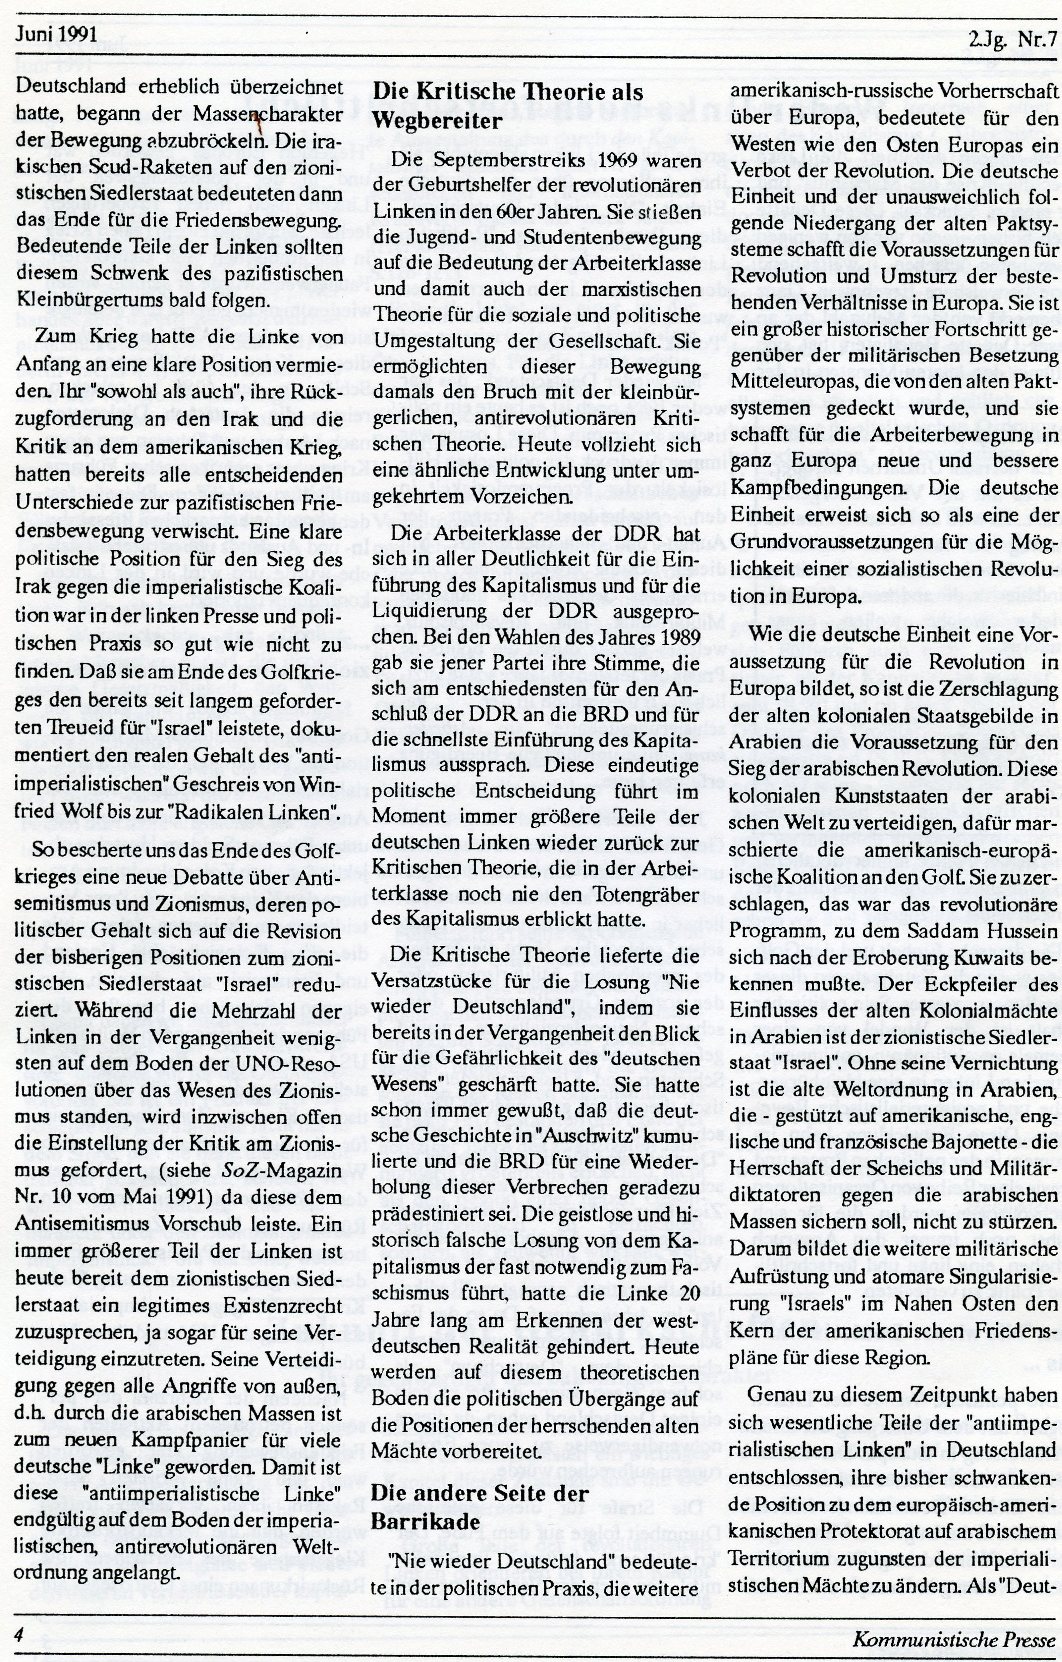 Gelsenkirchen_Kommunistische_Presse_1991_07_004